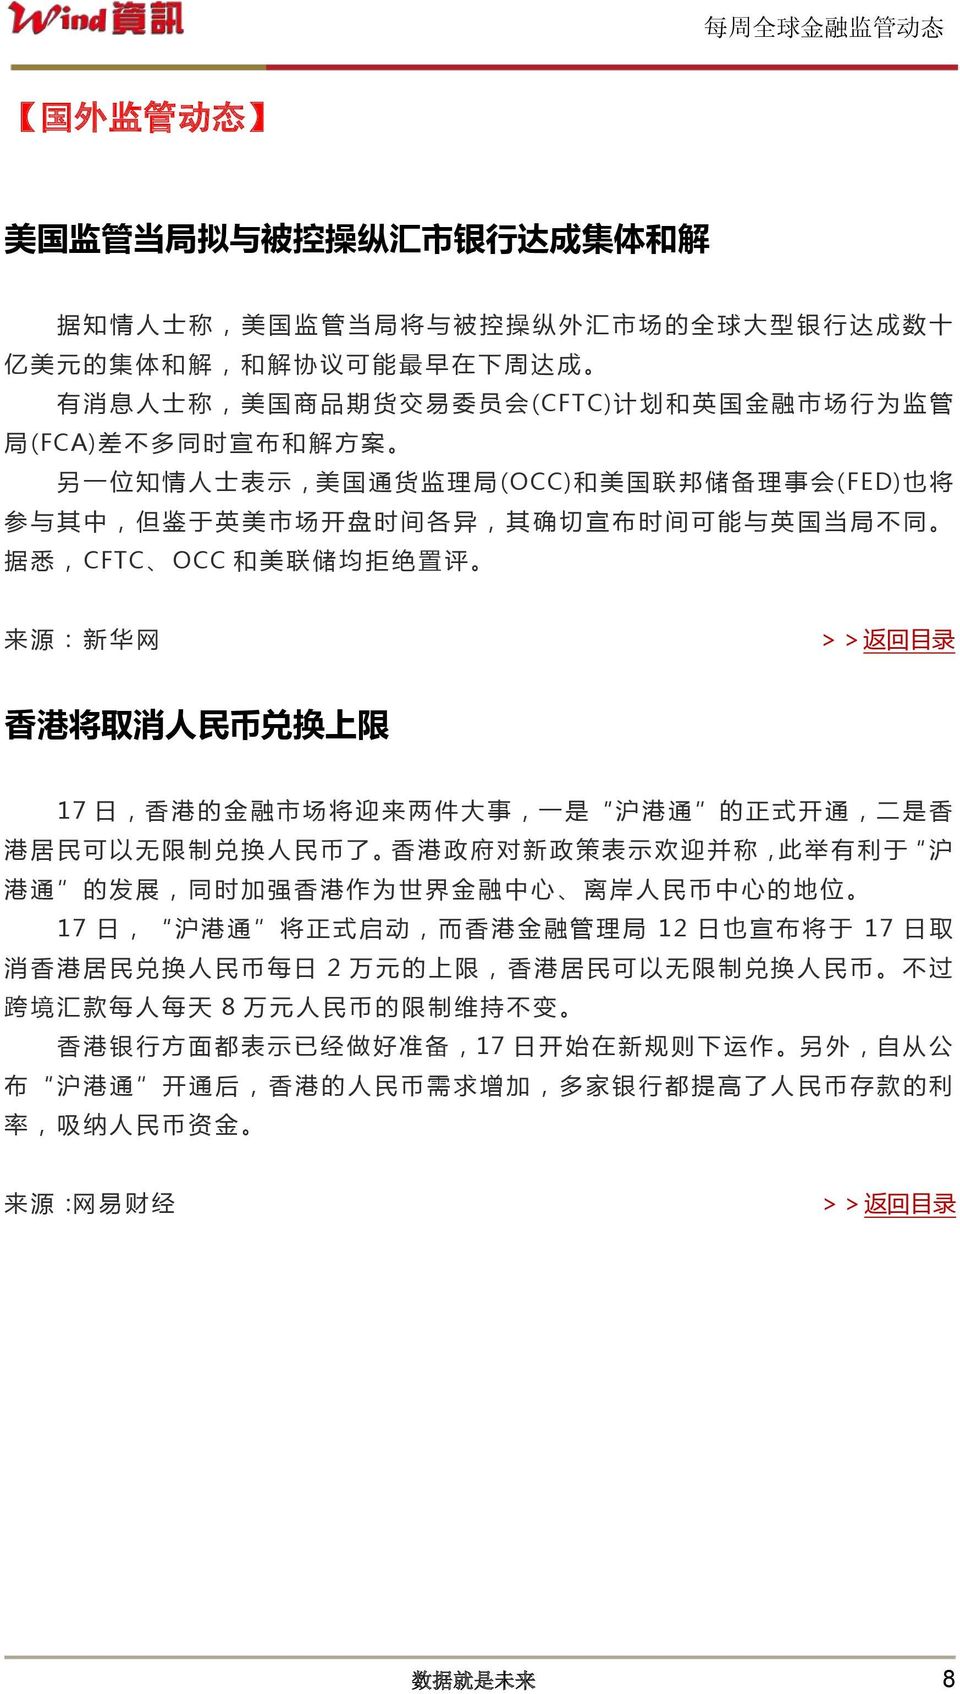 同 据 悉,CFTC OCC 和 美 联 储 均 拒 绝 置 评 来 源 : 新 华 网 香 港 将 取 消 人 民 币 兑 换 上 限 17 日, 香 港 的 金 融 市 场 将 迎 来 两 件 大 事, 一 是 沪 港 通 的 正 式 开 通, 二 是 香 港 居 民 可 以 无 限 制 兑 换 人 民 币 了 香 港 政 府 对 新 政 策 表 示 欢 迎 并 称, 此 举 有 利 于 沪